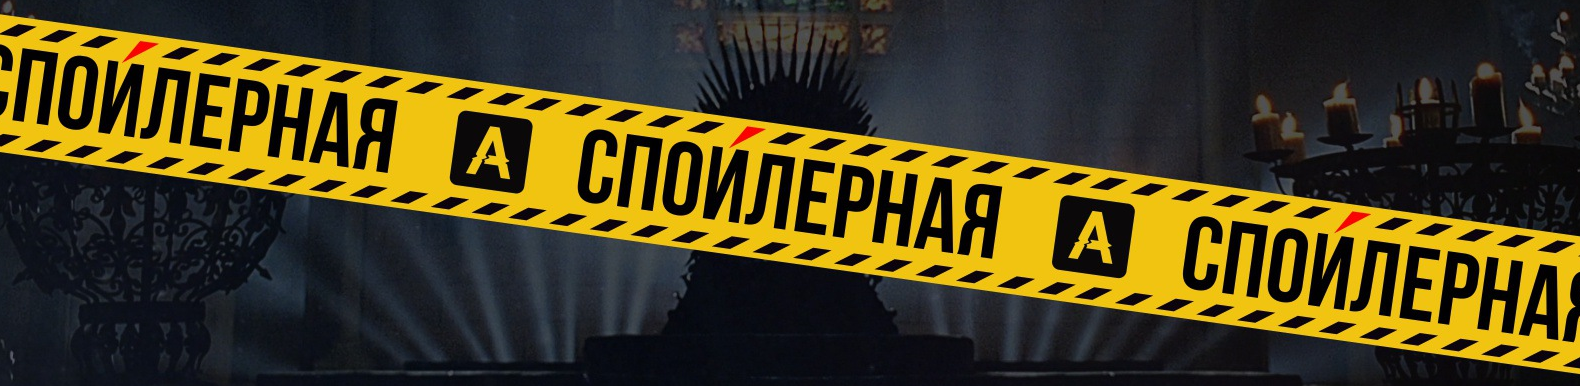 Амедиатека и ВКонтакте запускают новое рекап-шоу о сериалах “Спойлерная”